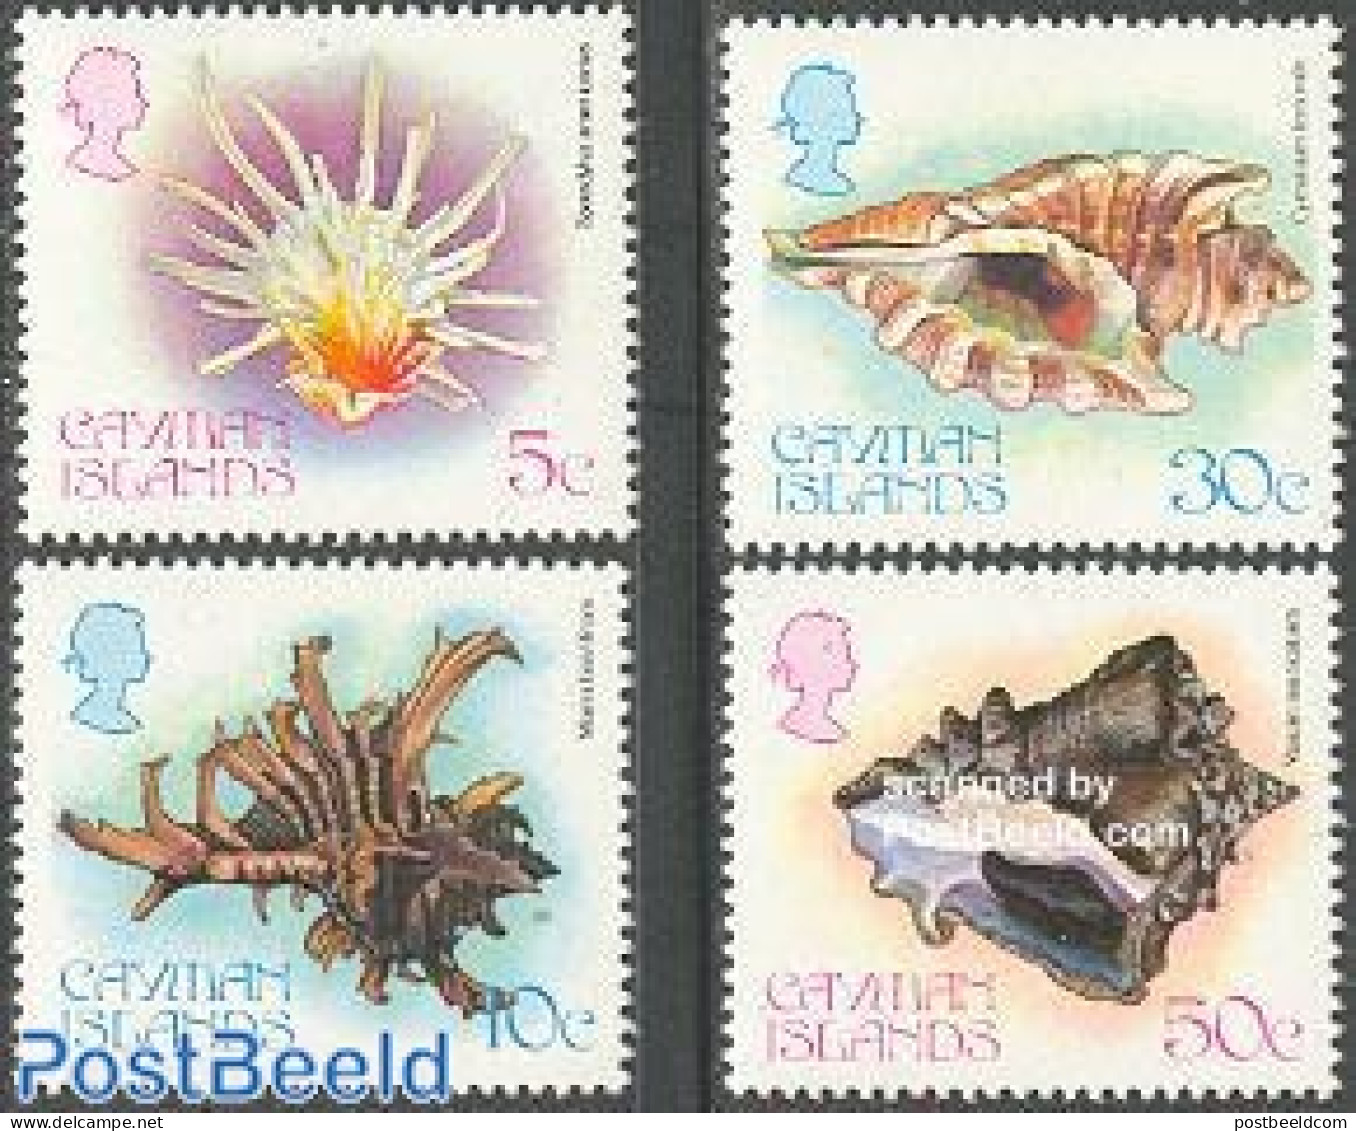 Cayman Islands 1980 Shells 4v, Mint NH, Nature - Shells & Crustaceans - Maritiem Leven